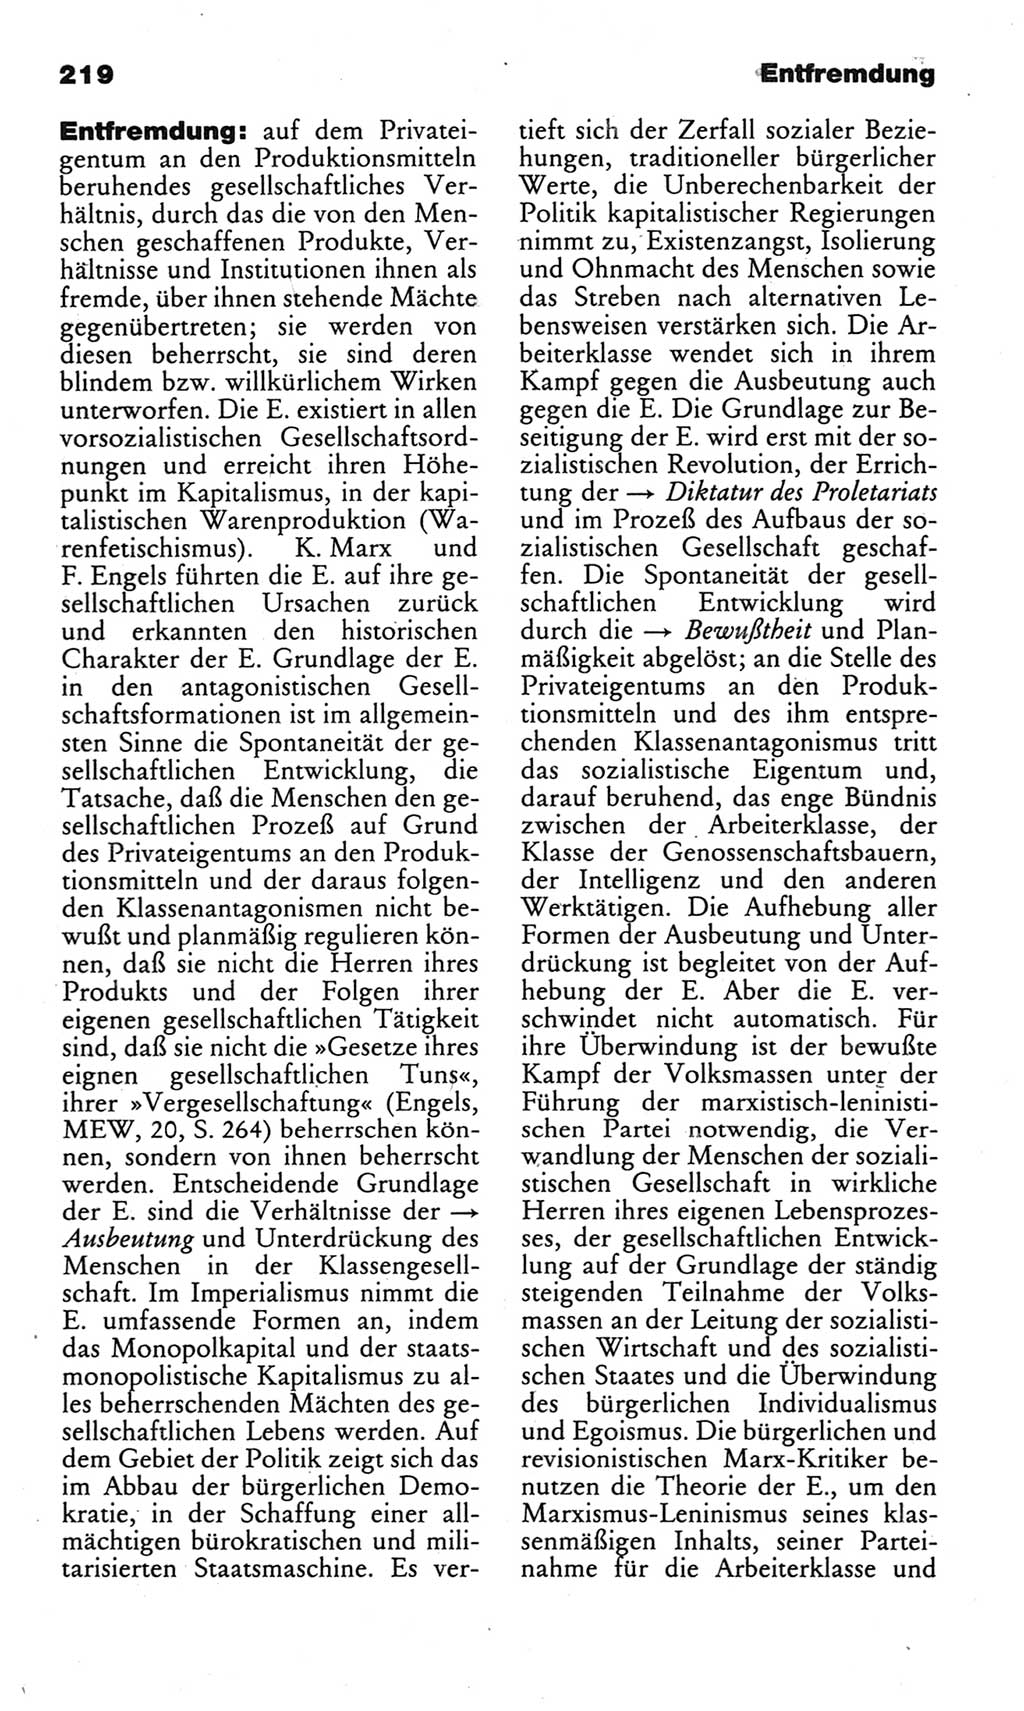 Kleines politisches Wörterbuch [Deutsche Demokratische Republik (DDR)] 1983, Seite 219 (Kl. pol. Wb. DDR 1983, S. 219)